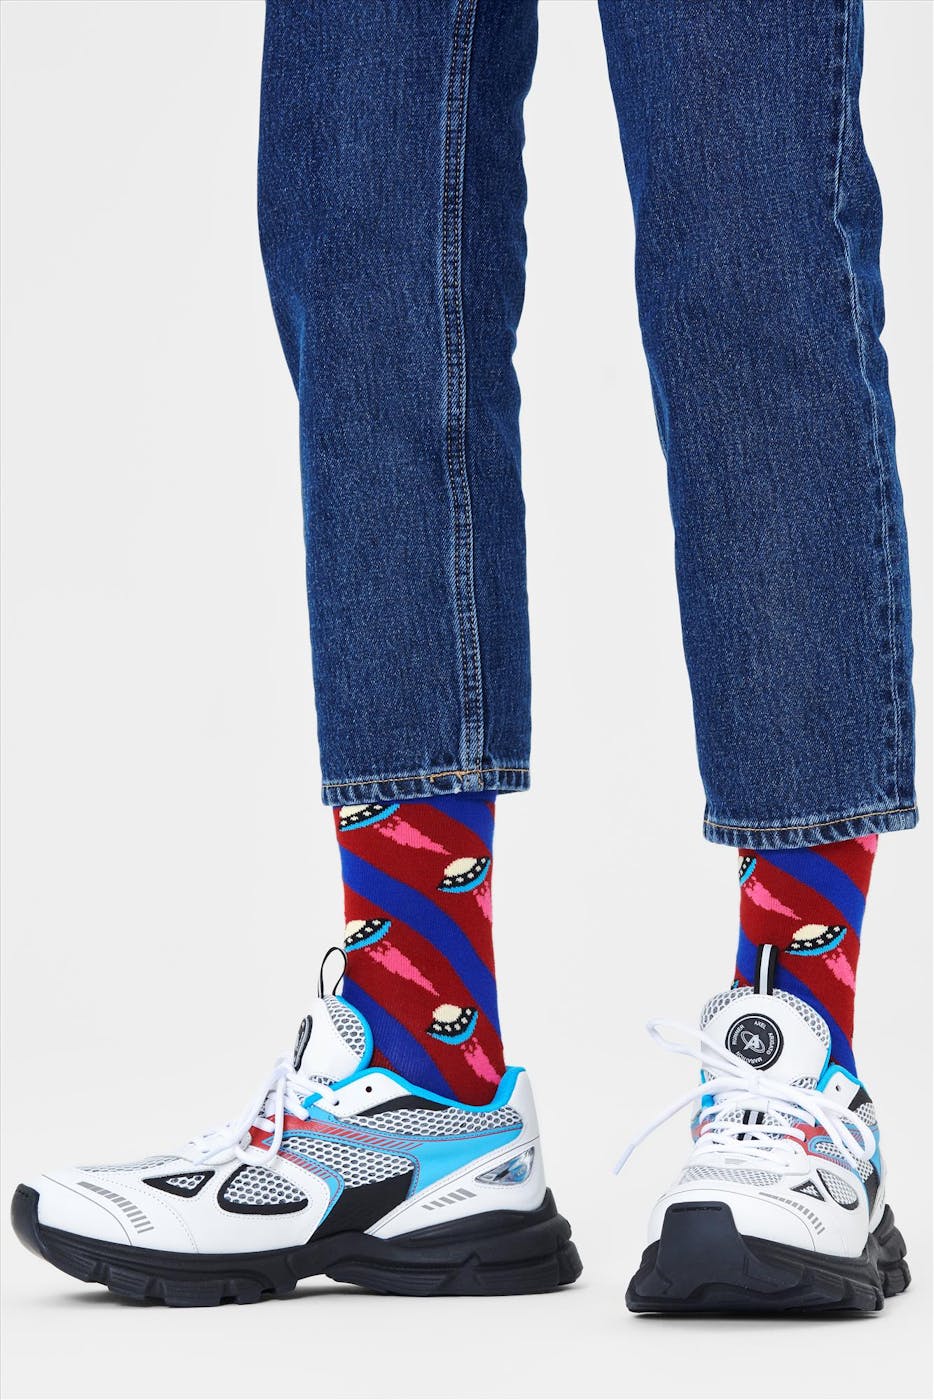 Happy Socks - Blauw-rood gestreepte Ufo Sokken, maat 36-40